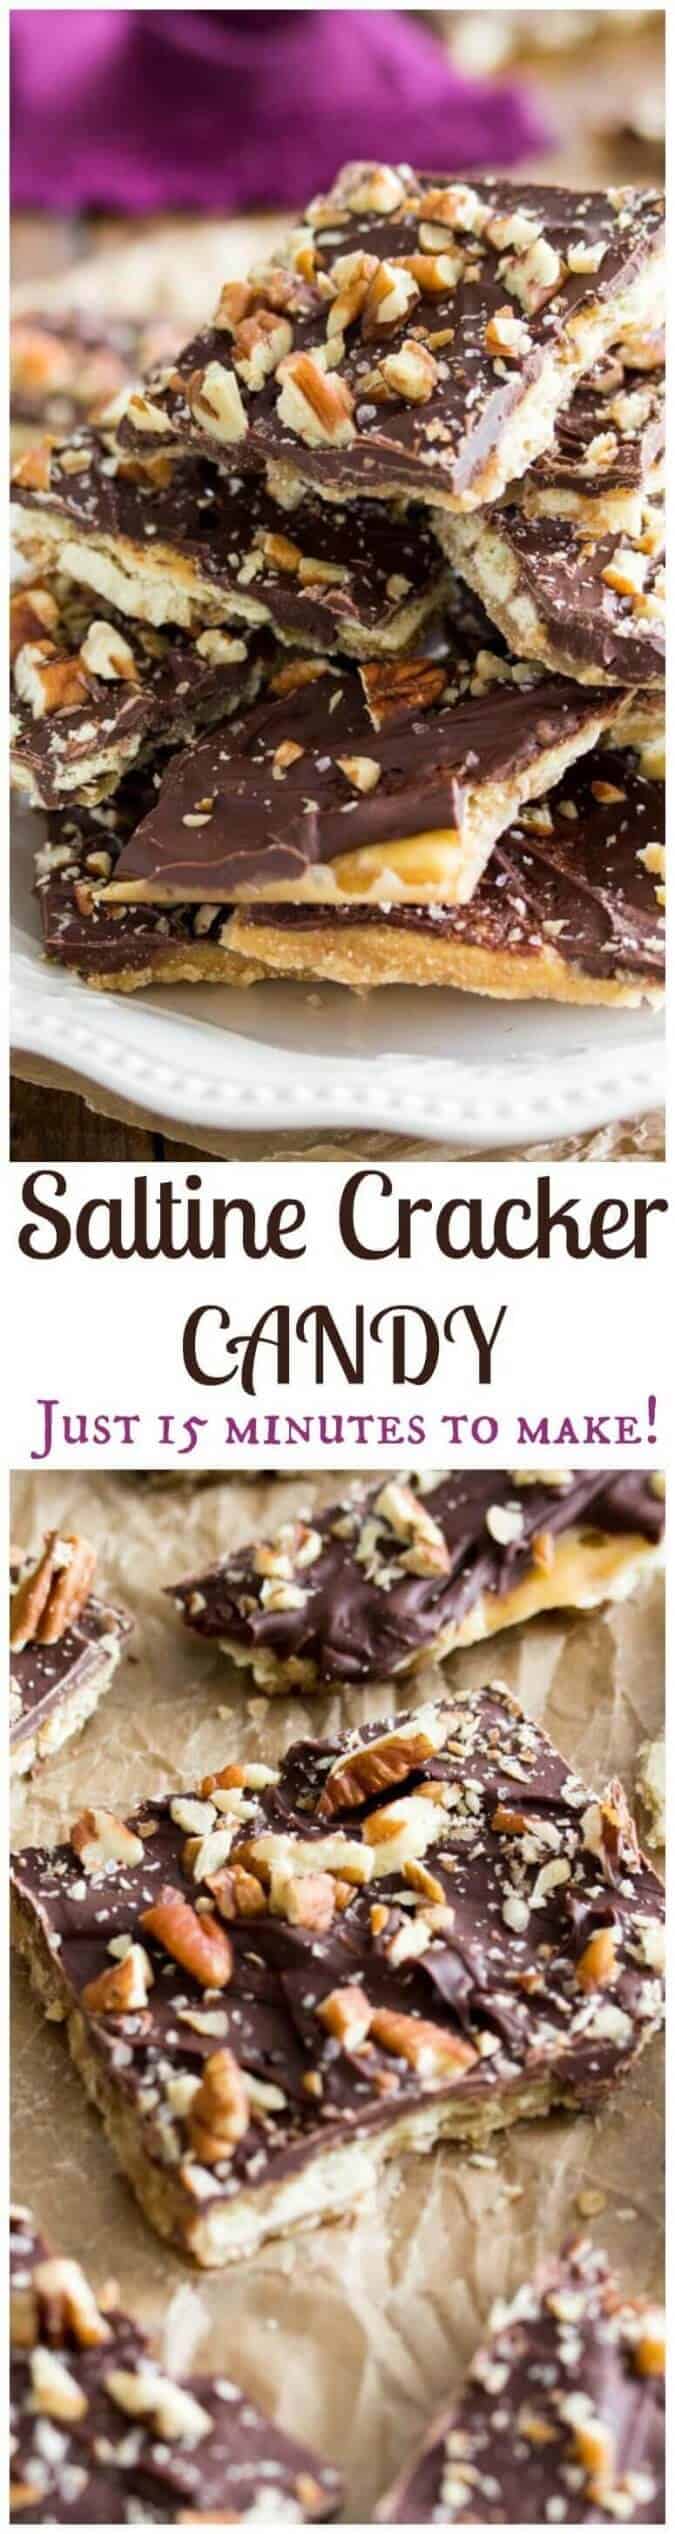 Saltine Cracker candy